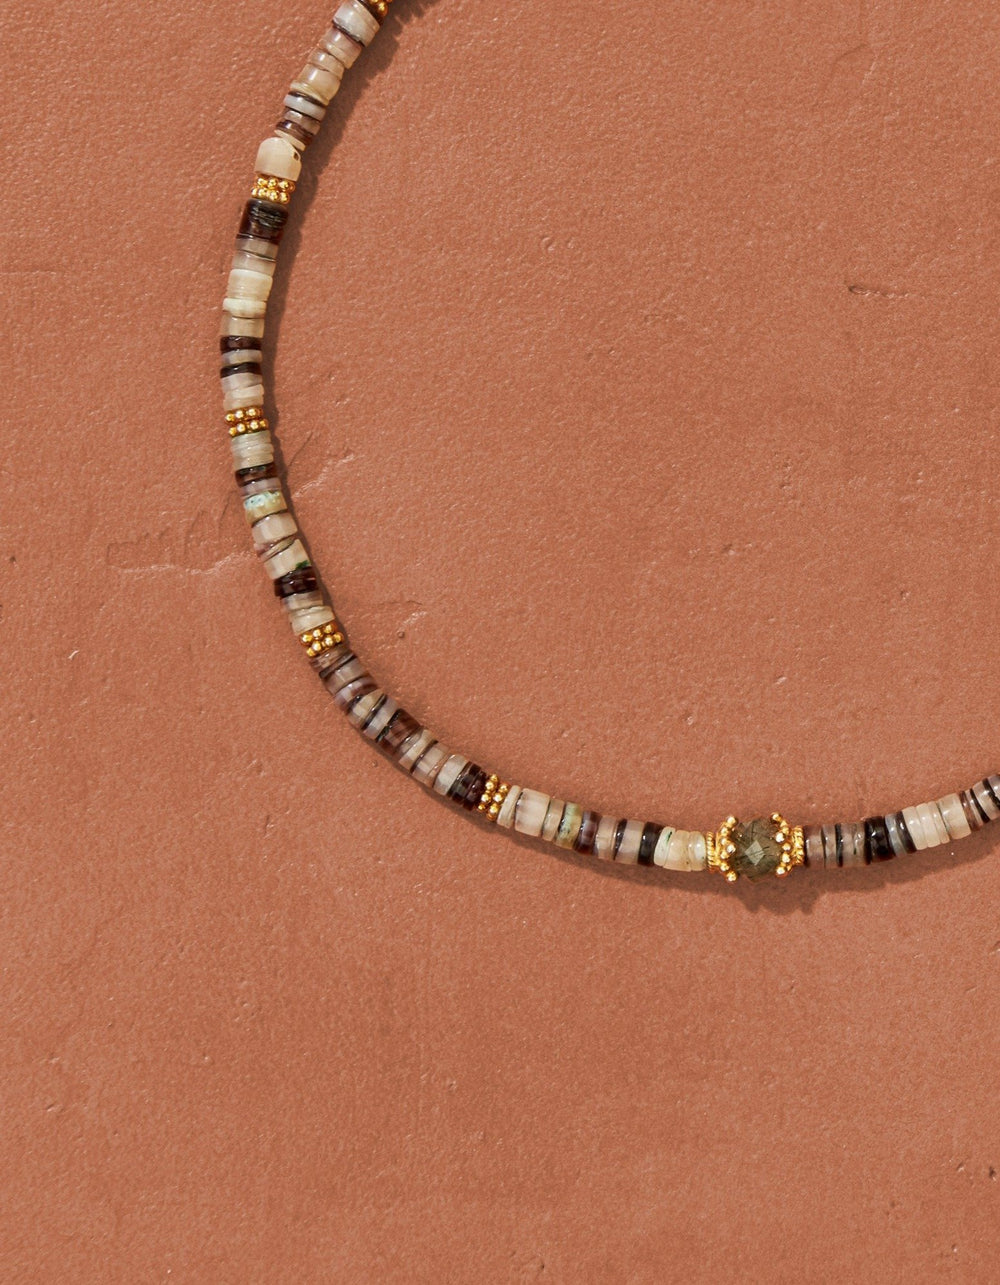 Yoni necklace